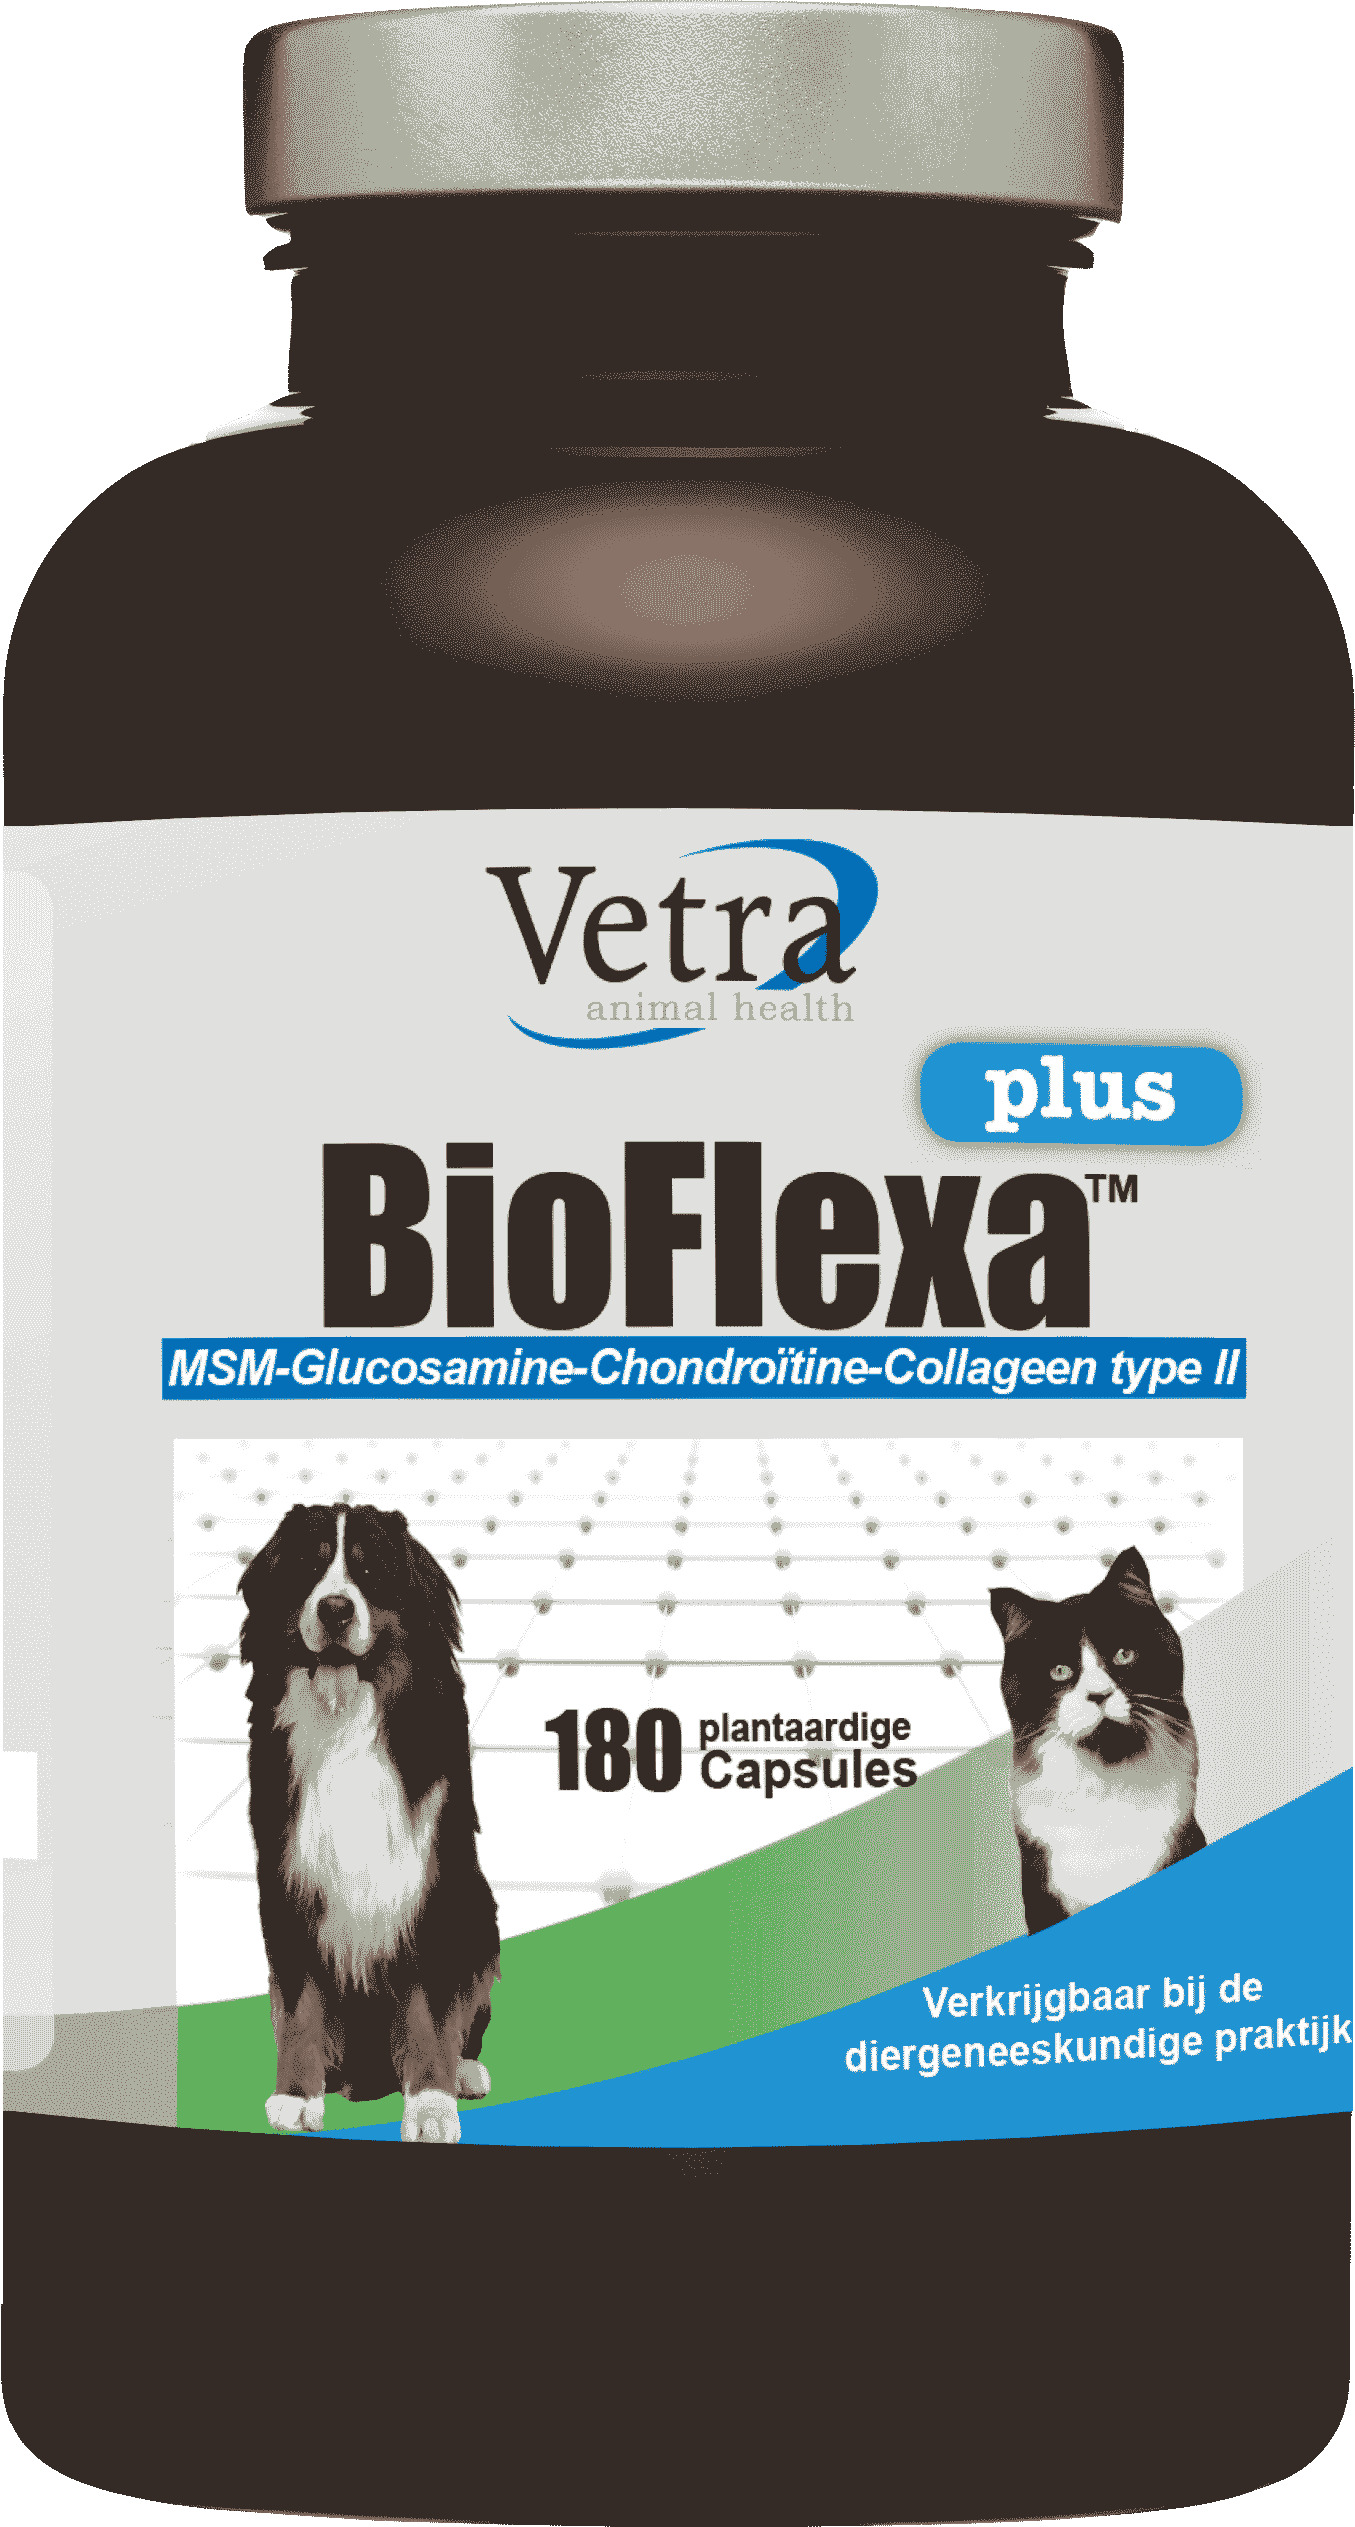 middernacht oneerlijk Beleefd BioFlexa Plus kopen? Veilig en betrouwbaar bestellen!